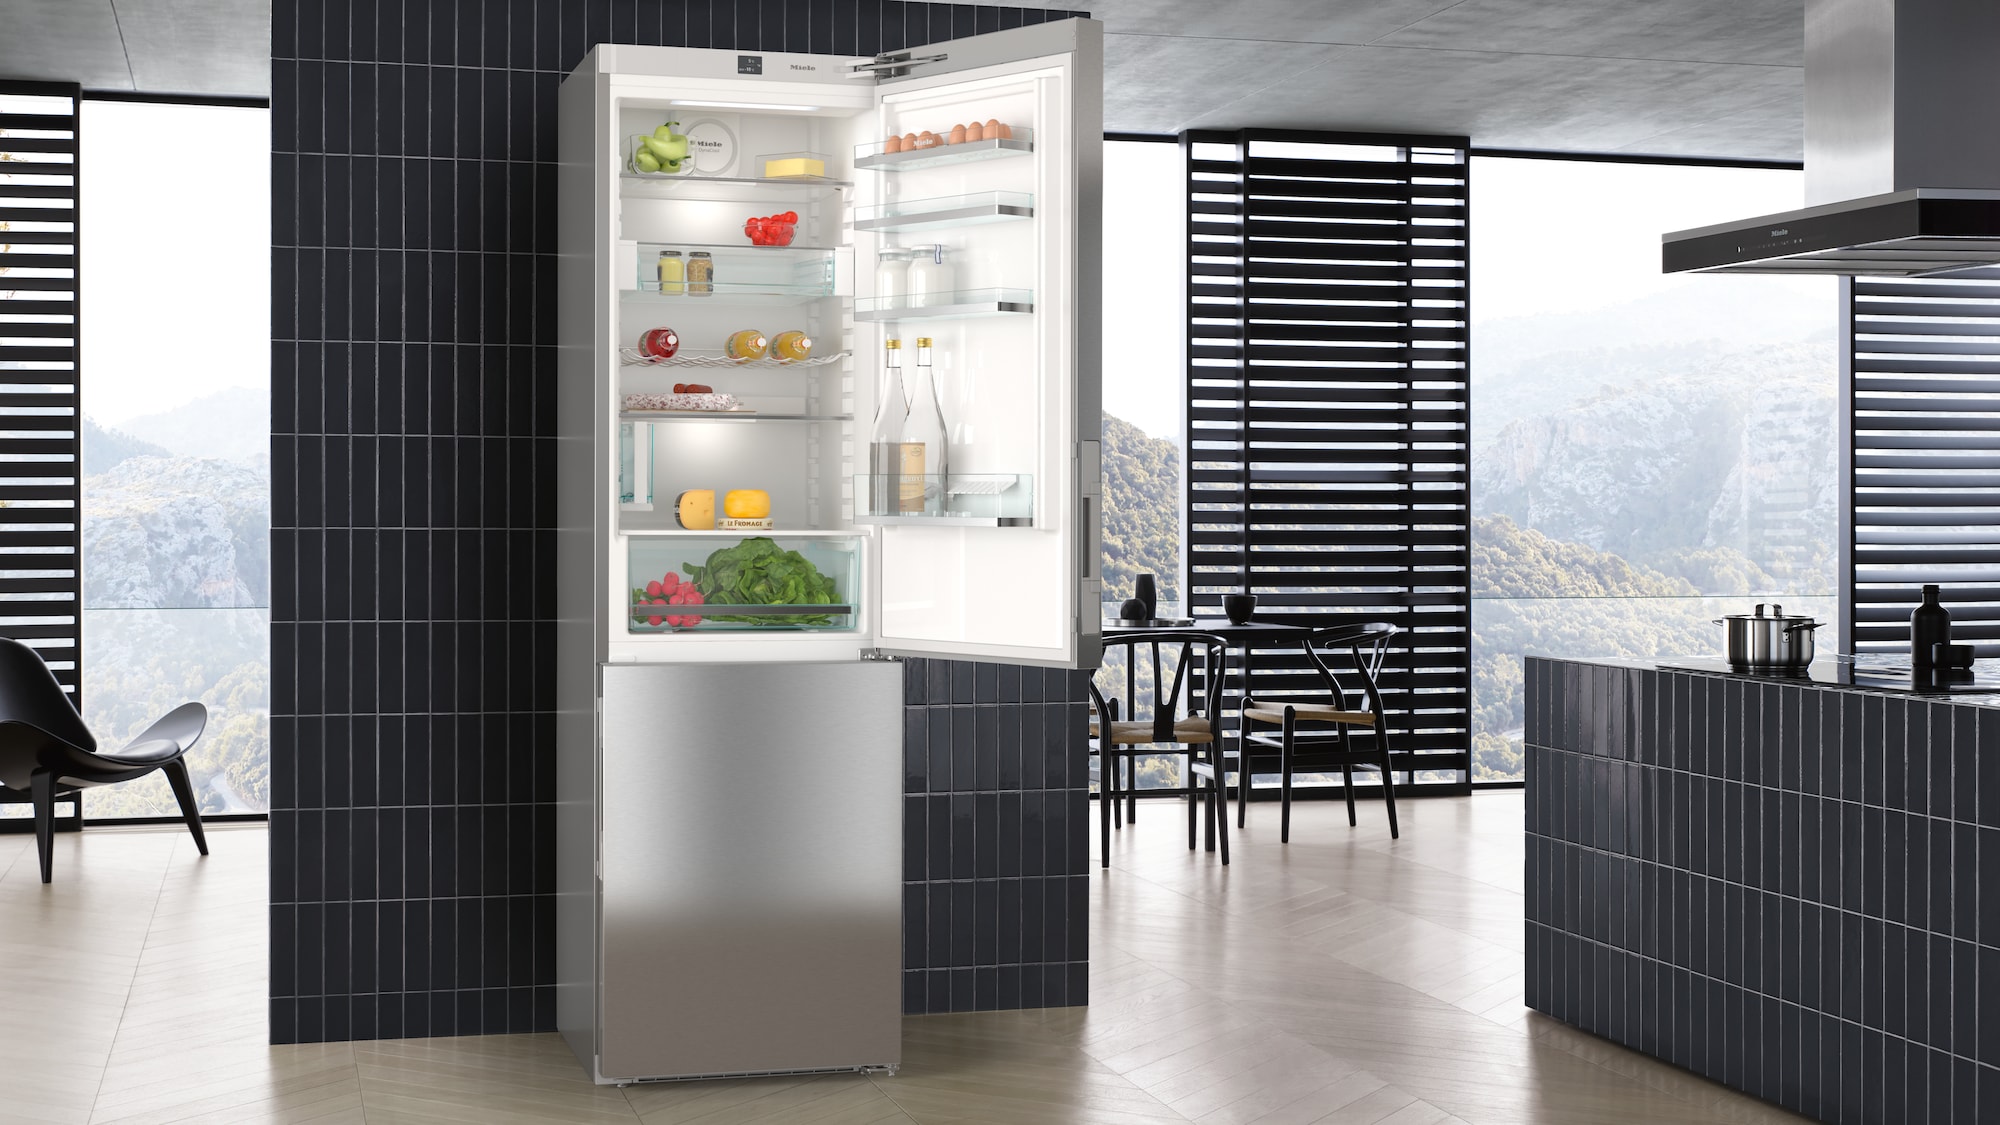 réfrigérateur américain (food-center) avec distributeur de glace